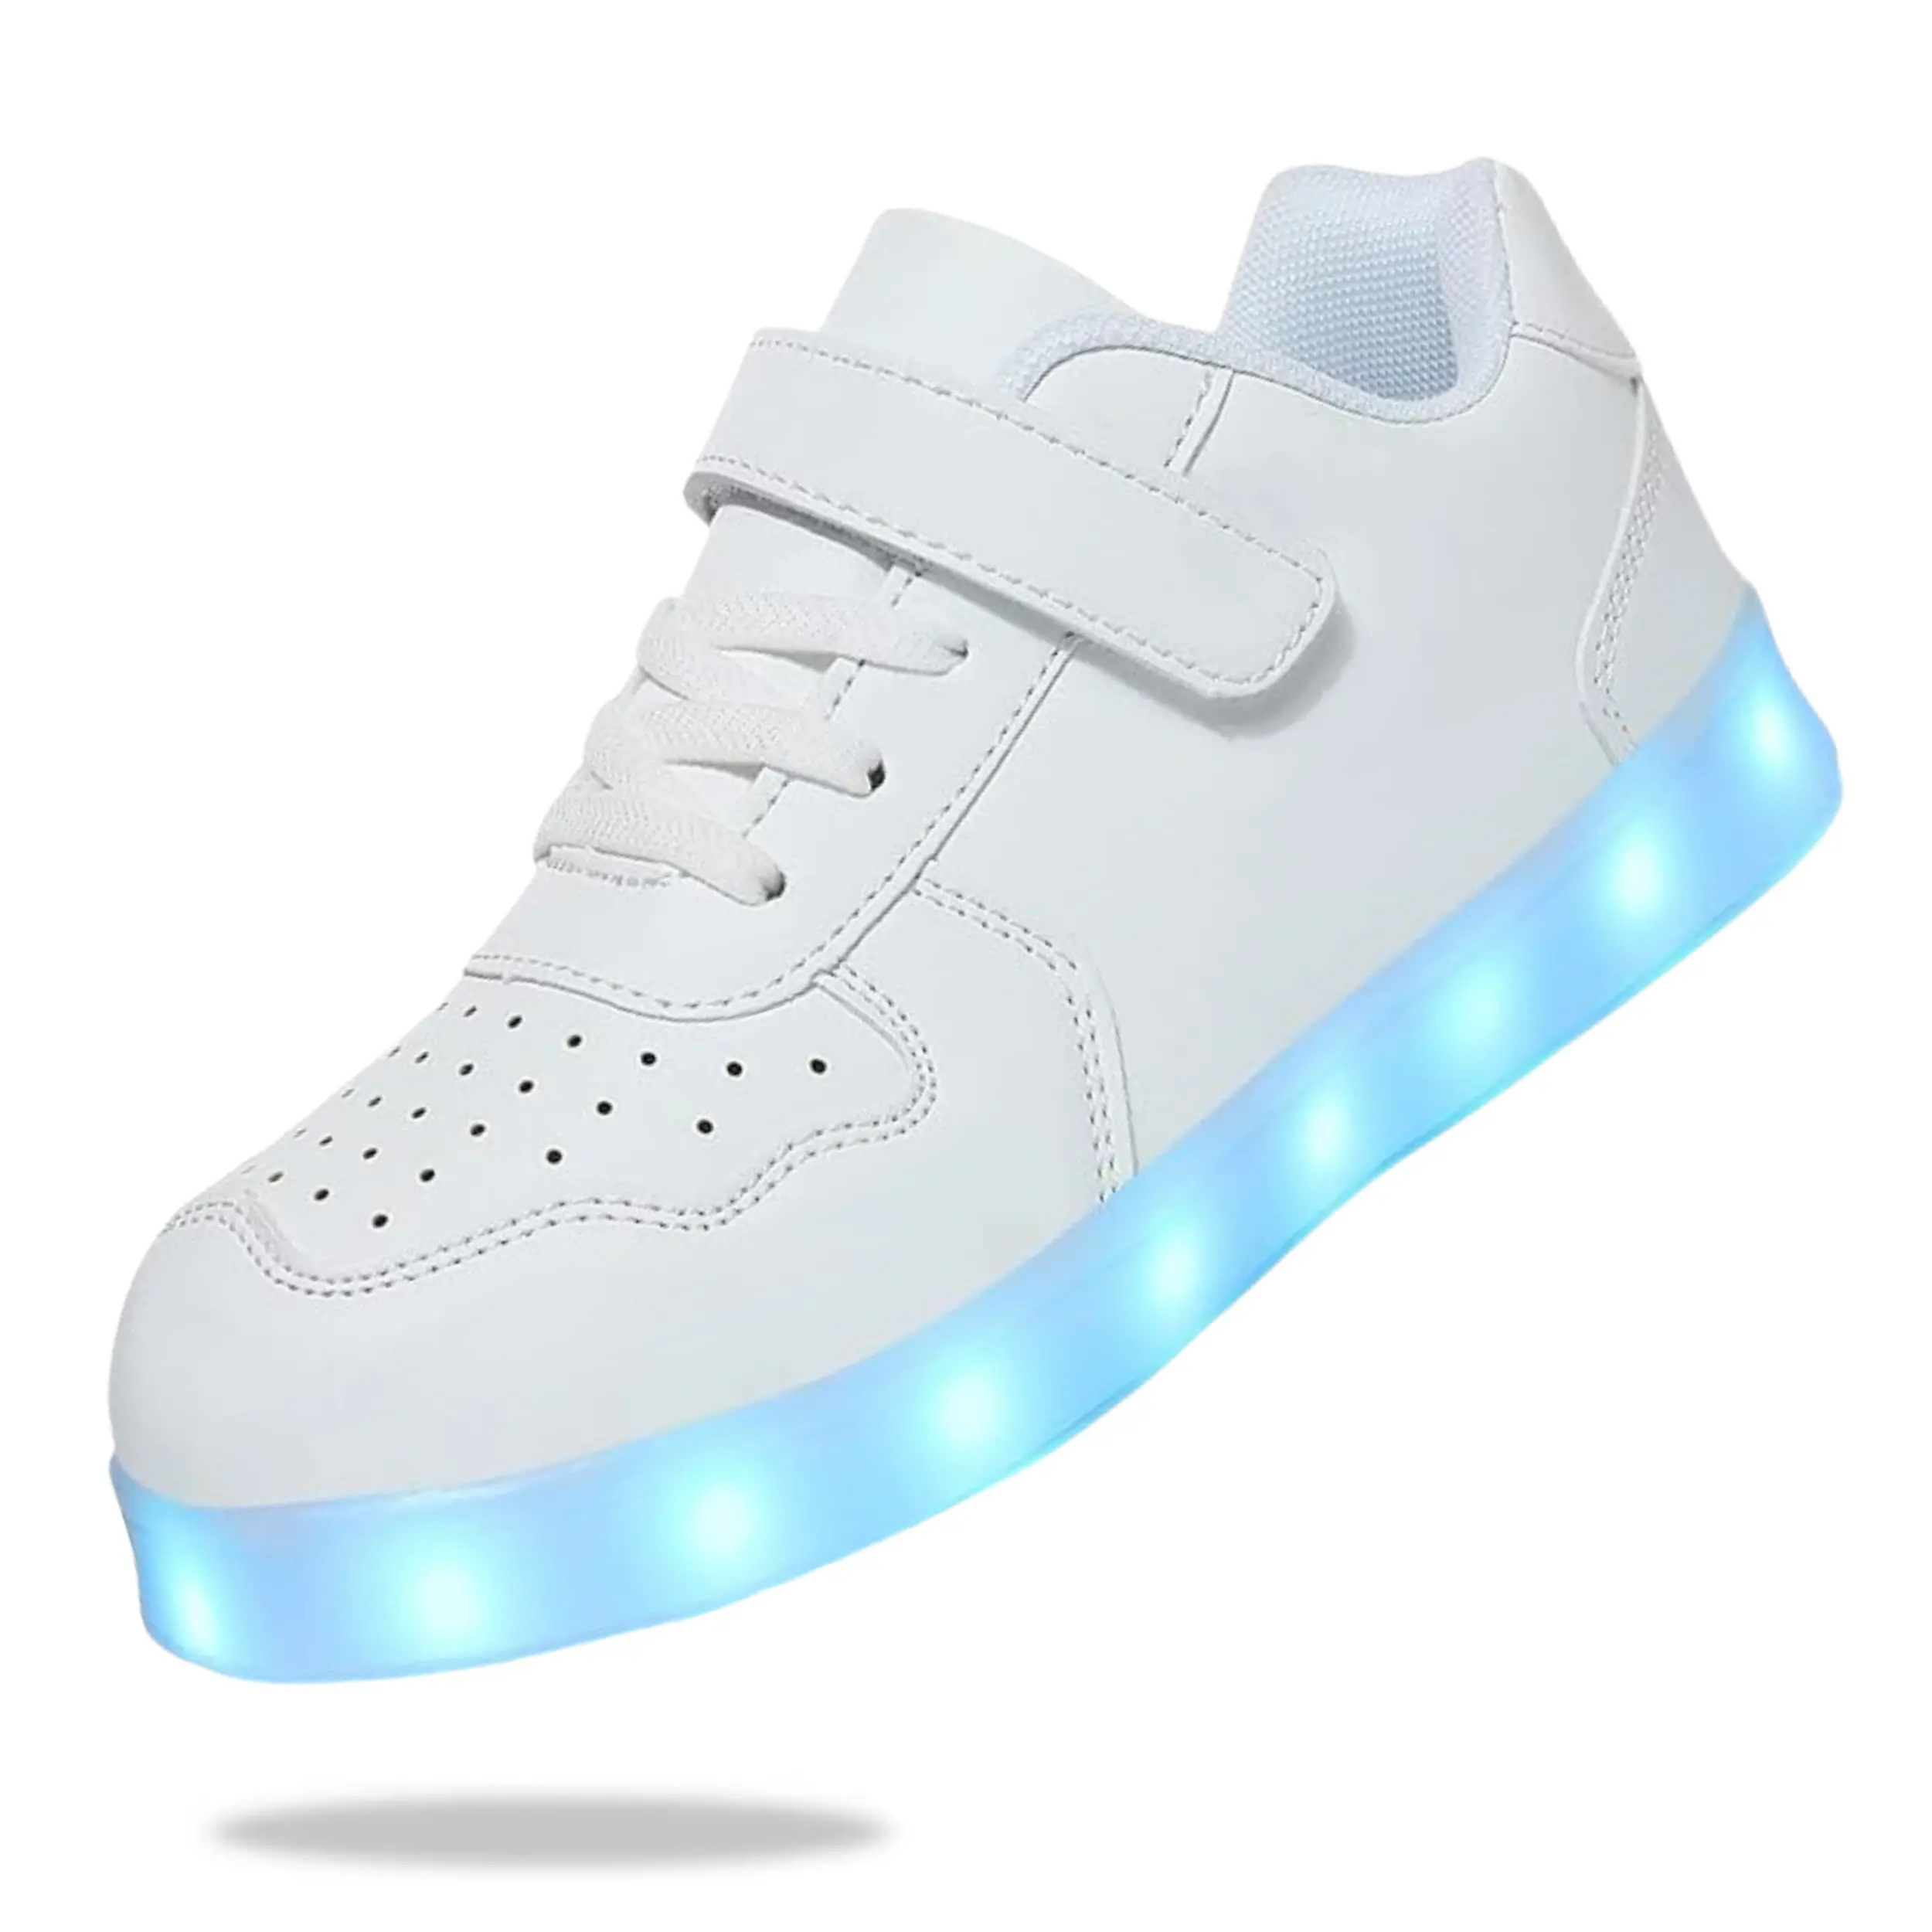 G. DUCK COOL Moda Niños Personalizado Light Up Zapatos Diseñador Niños y Niñas Al Aire Libre Transpirable SportsShoes Antideslizante Kid Shoes